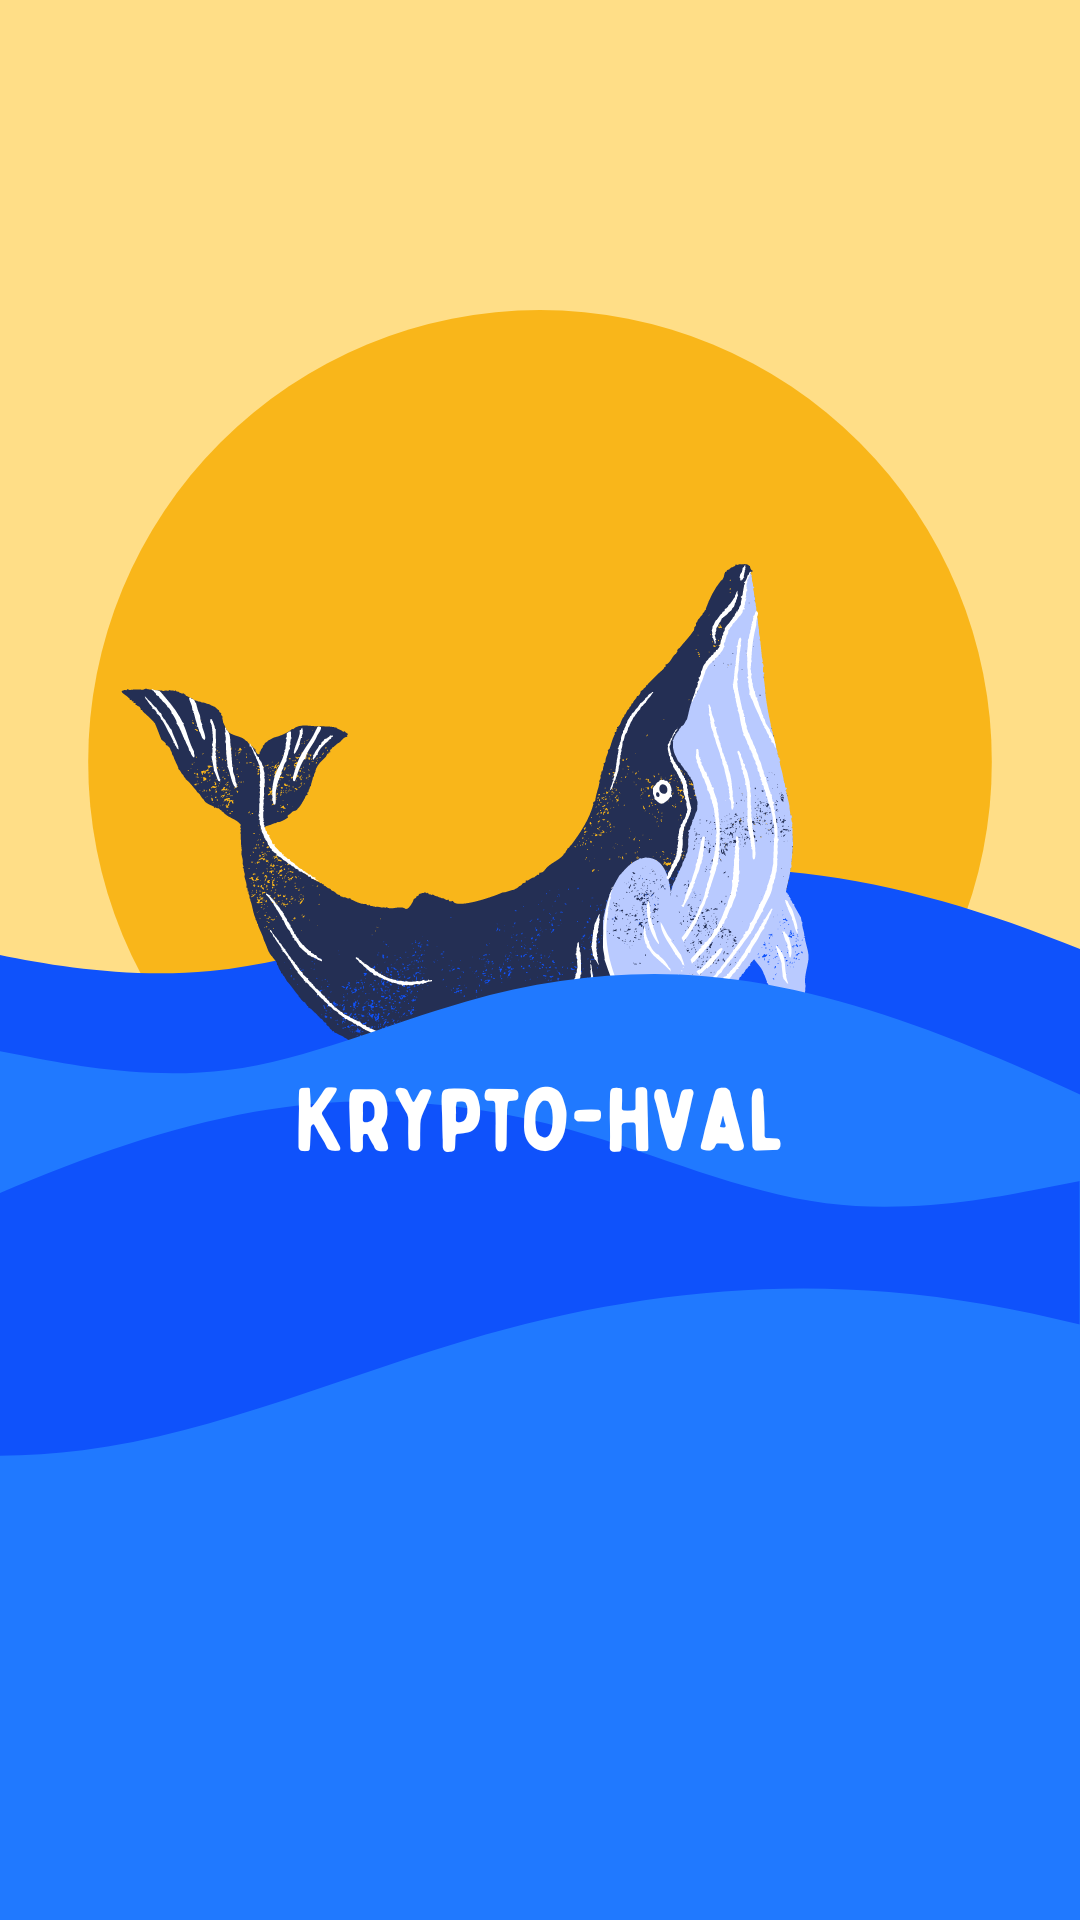 Krypto -hval kryptohval - crypto - whale - whales